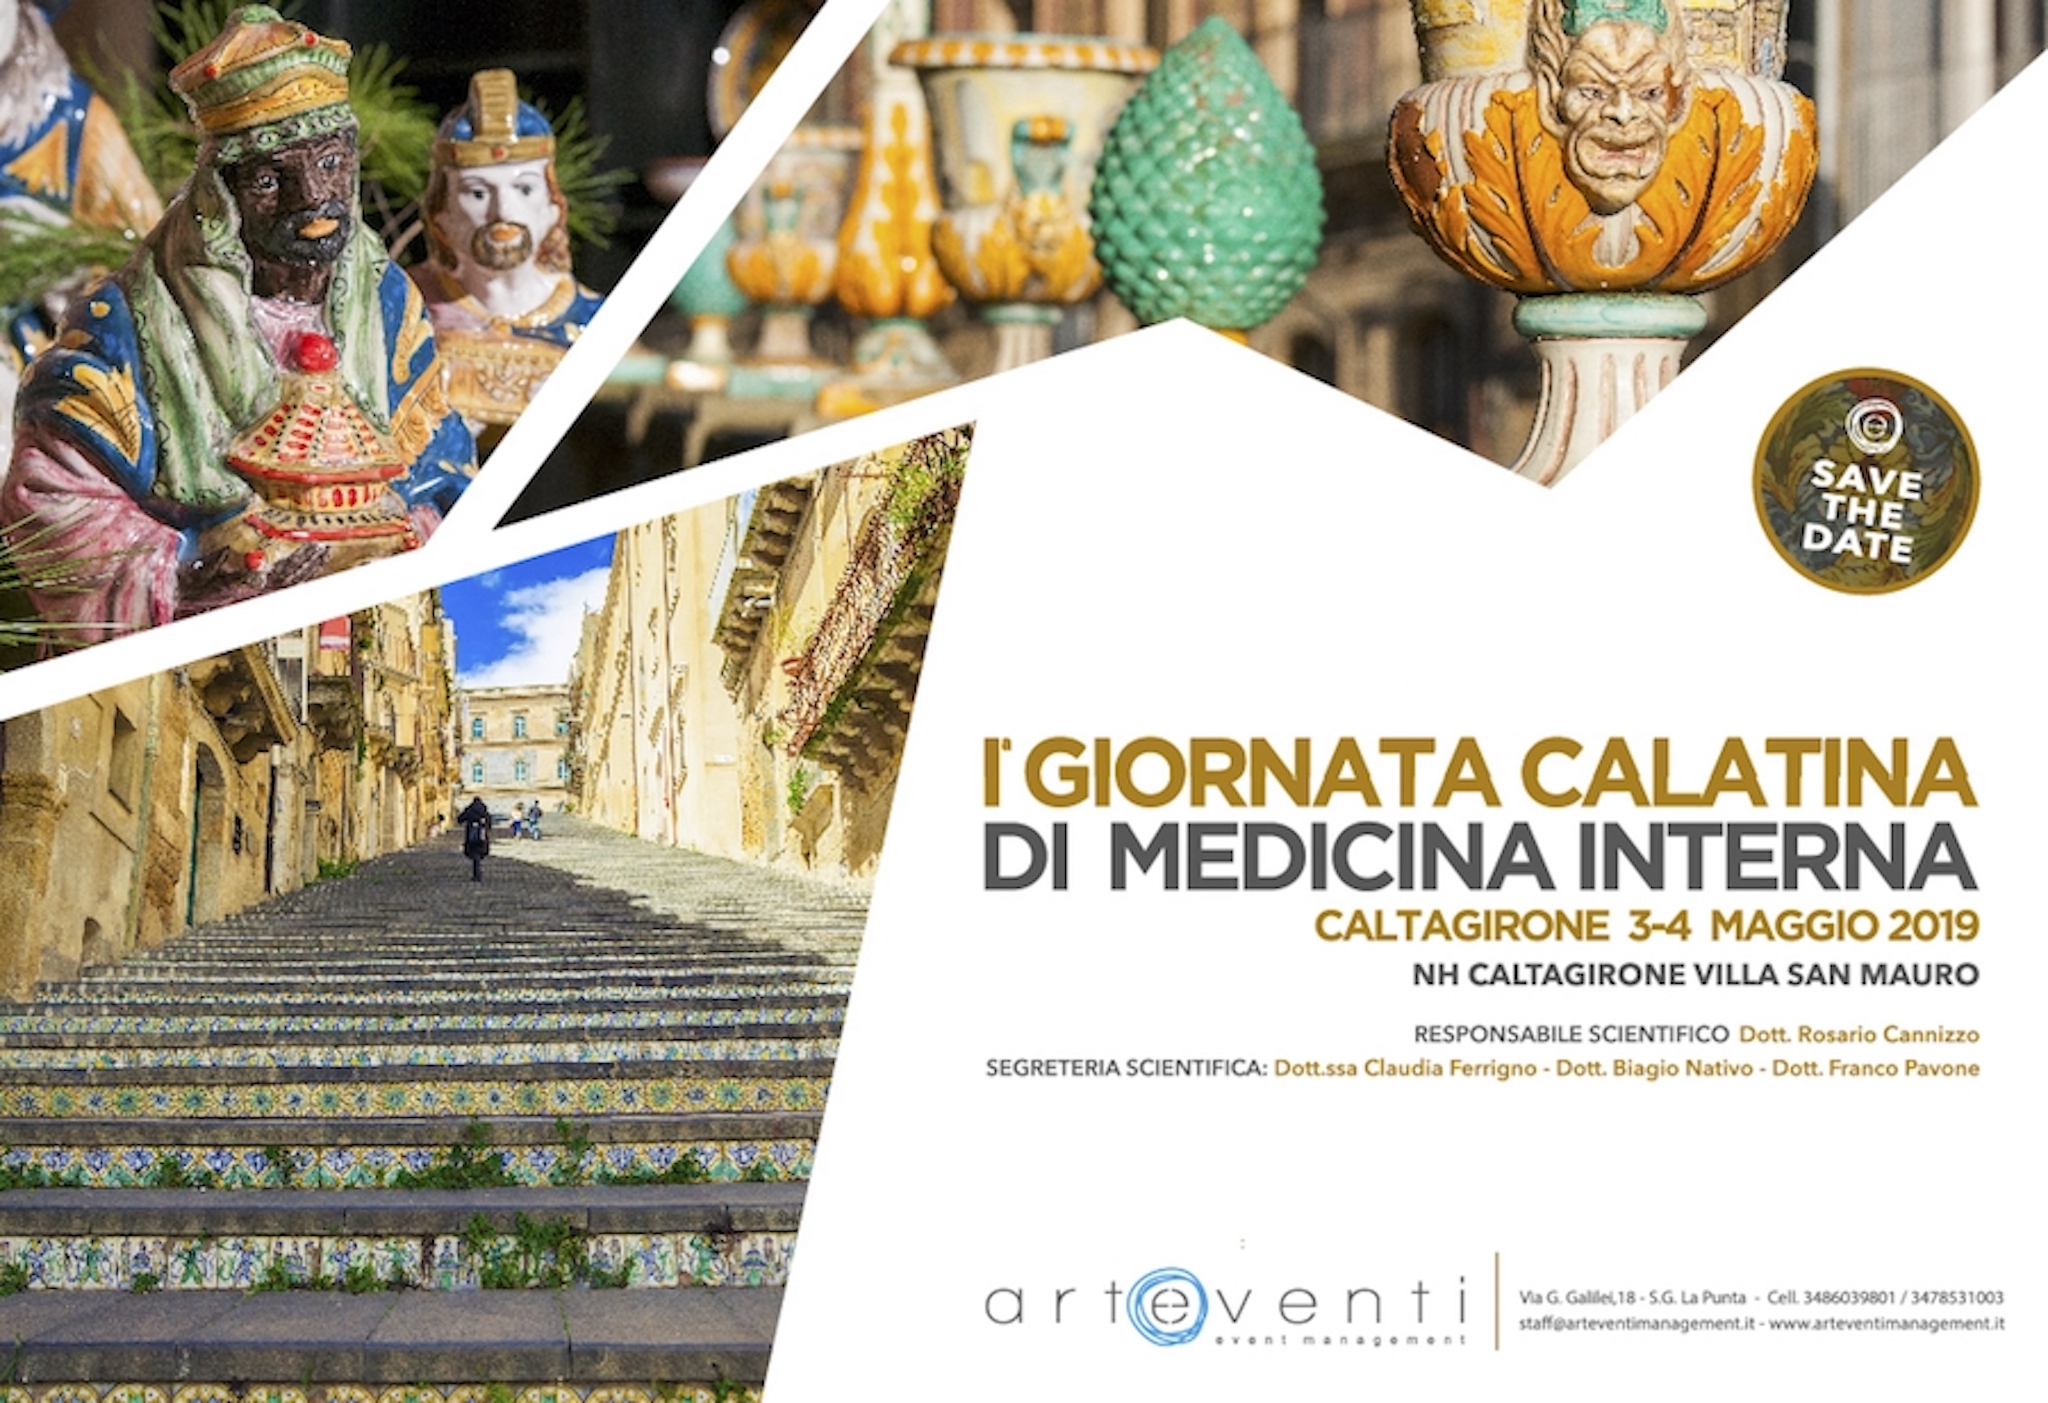 Iª Giornata Calatina di Medicina Interna - Caltagirone - 3-4 Maggio 2019 - Caltagirone 